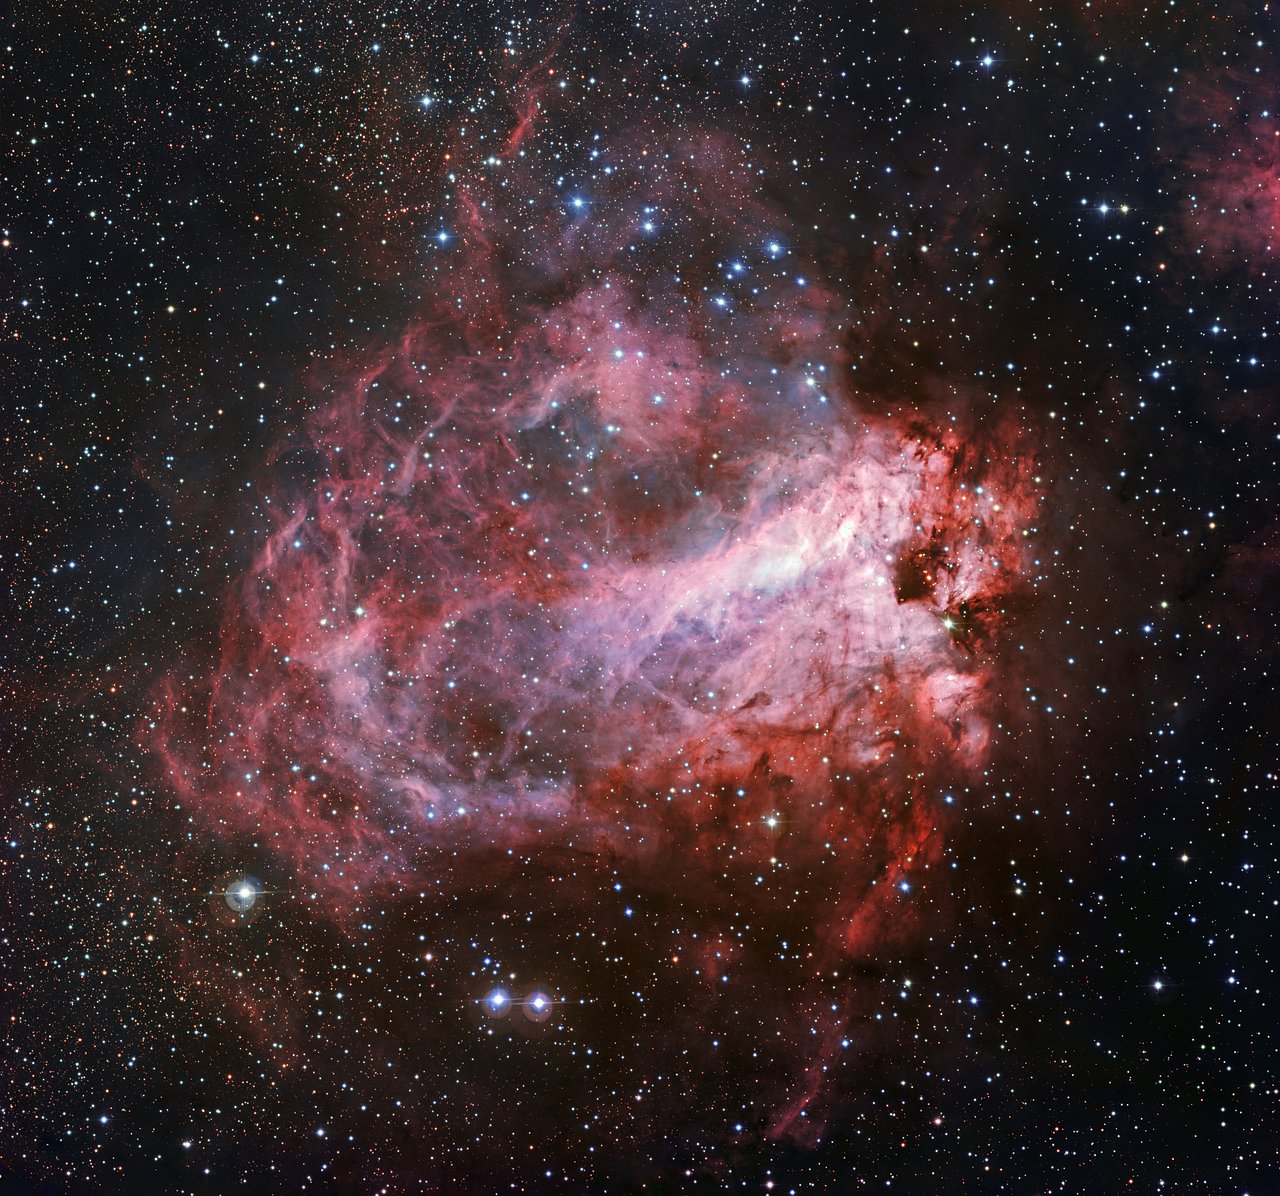 Messier 17 at visual wavelengths 